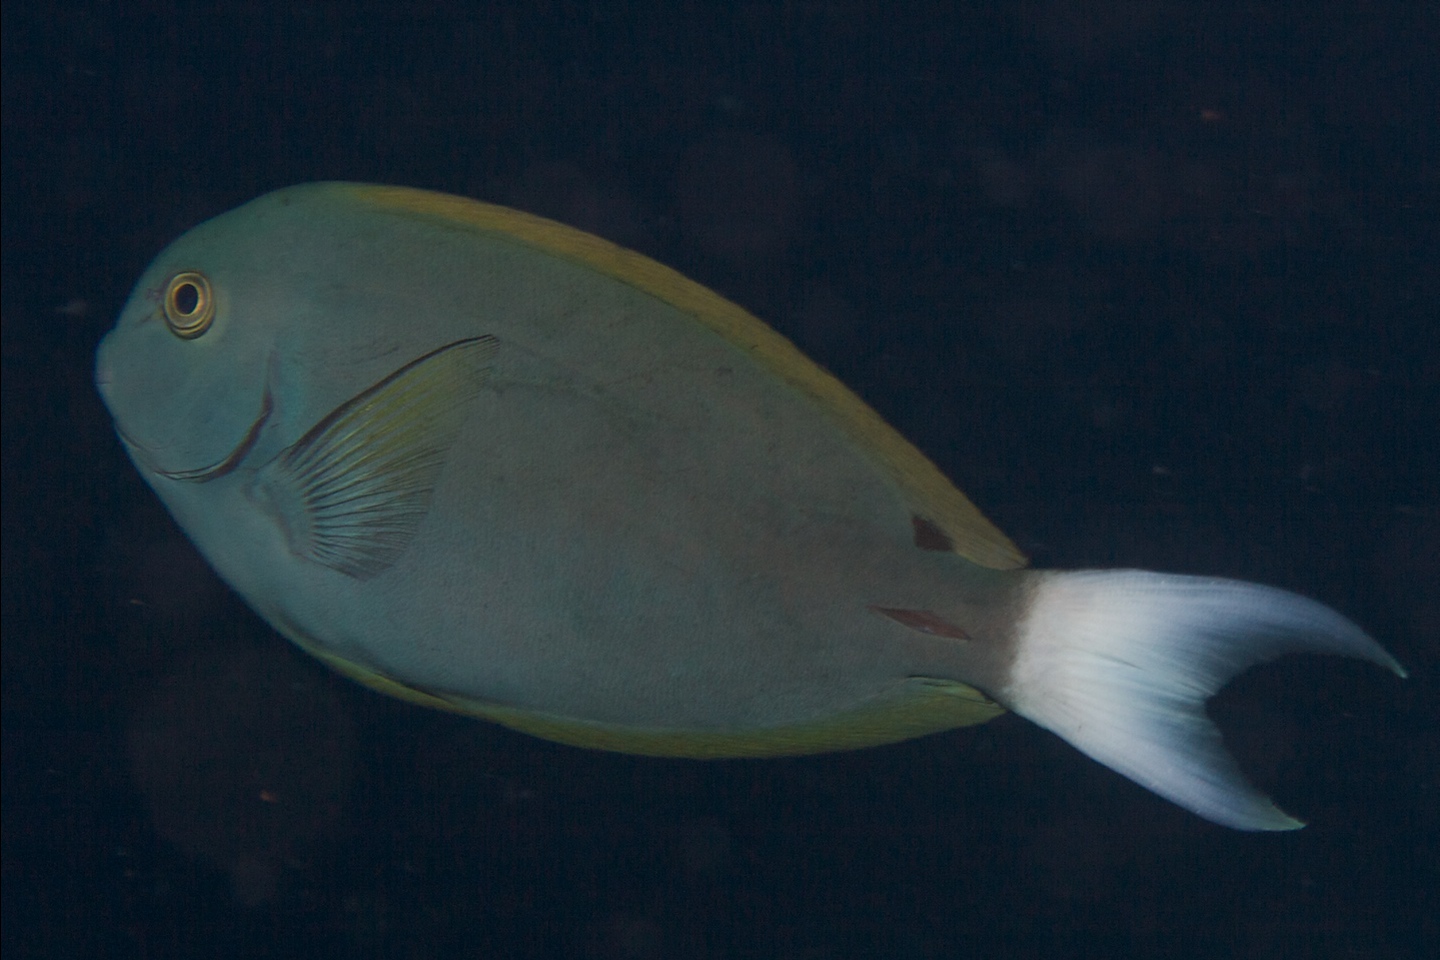 Whitetail surgeonfish